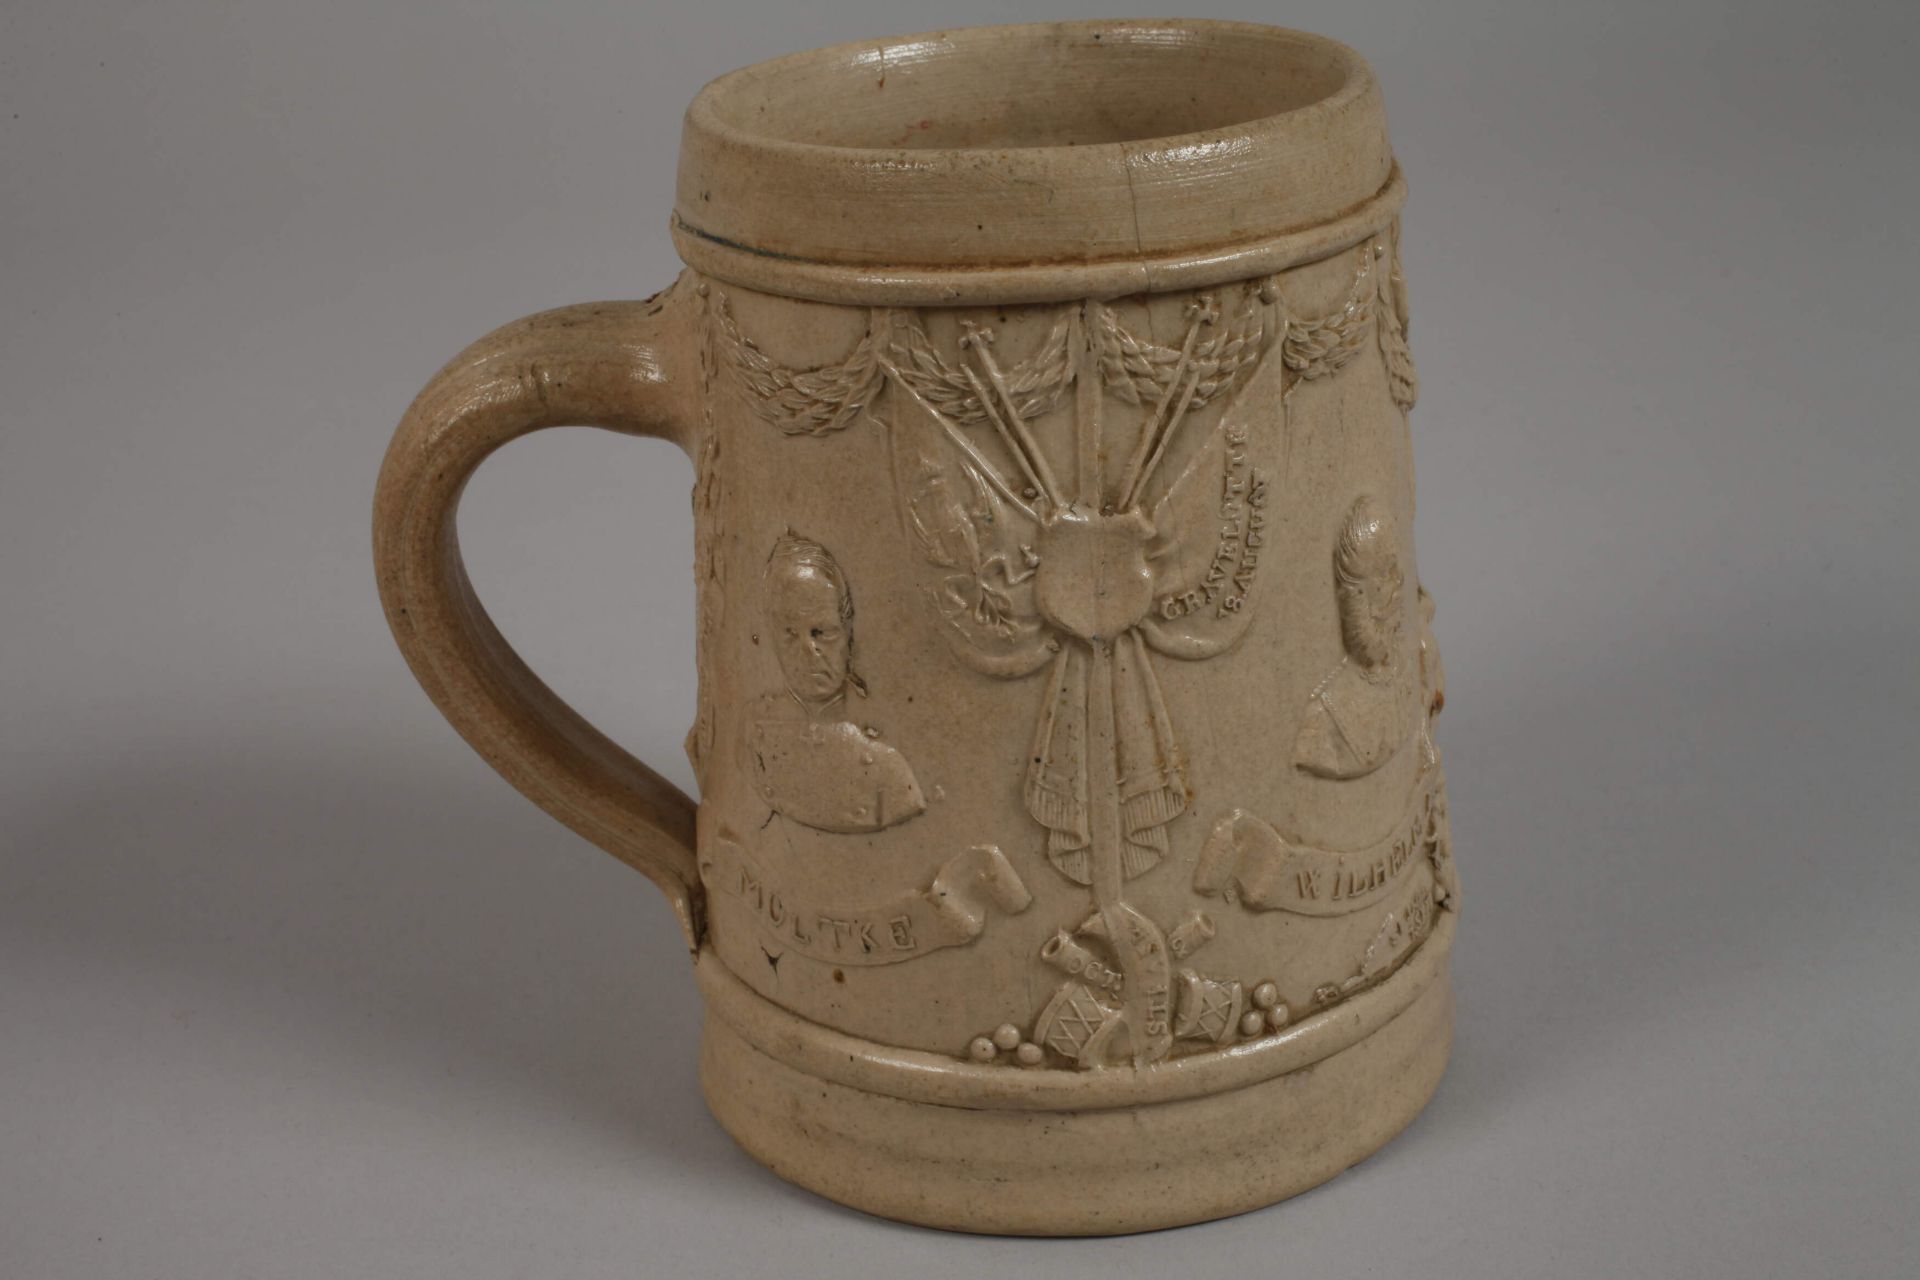 Seven 1st World War beer mugs - Image 6 of 6